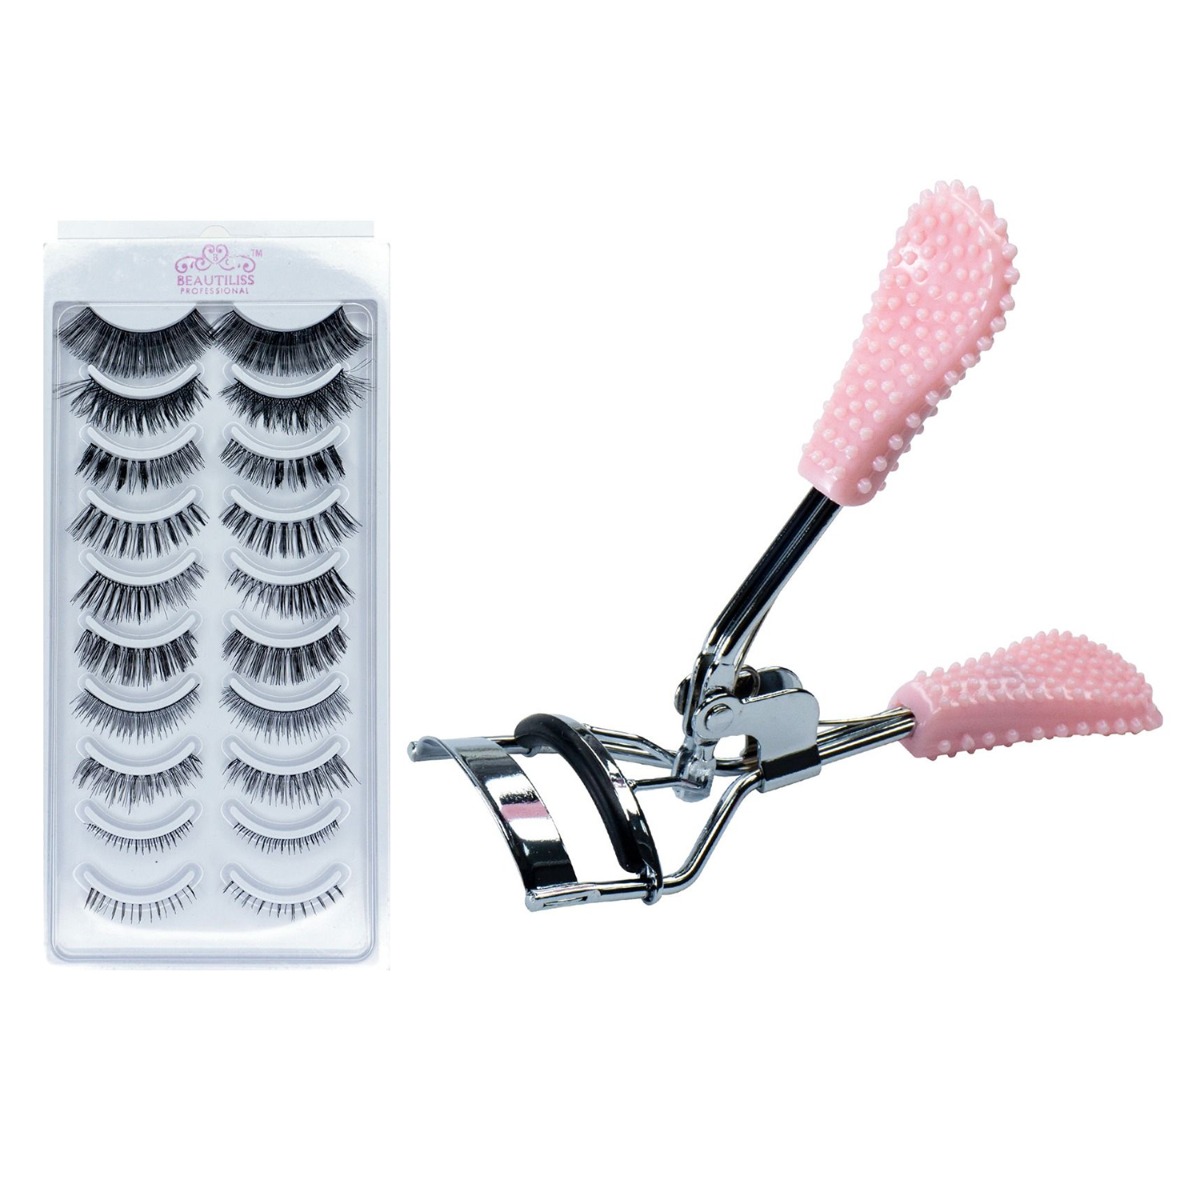 Beautiliss Professional Classic Eyelash Curler & False Eyelash Set, 10pc